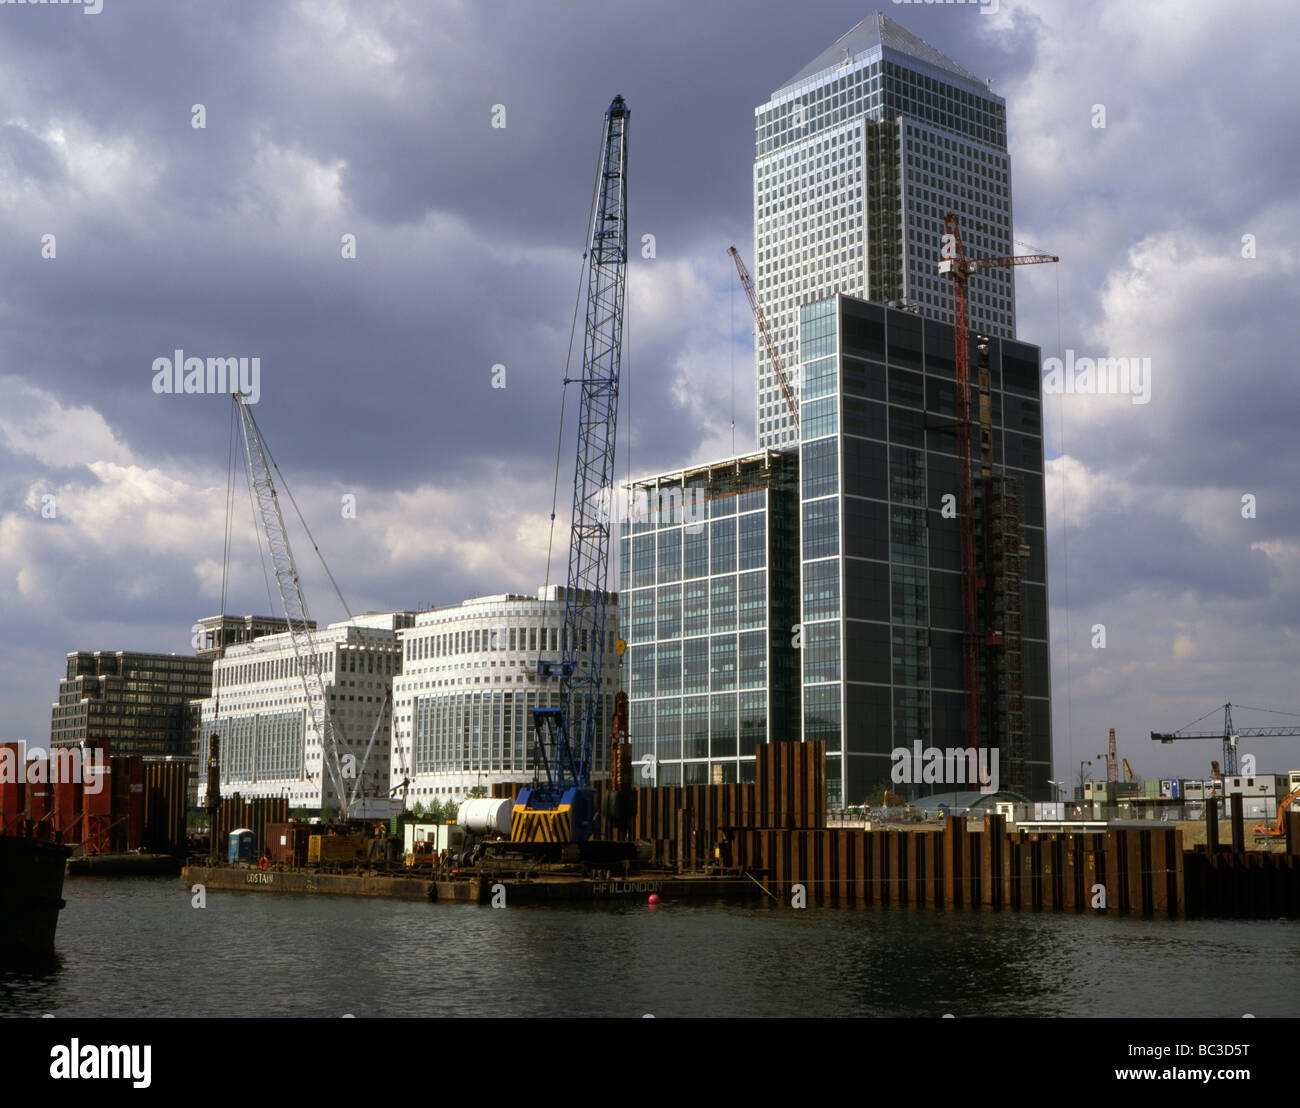 Bau am Canary Wharf Docklands in London in den späten 1990er Jahren Stockfoto